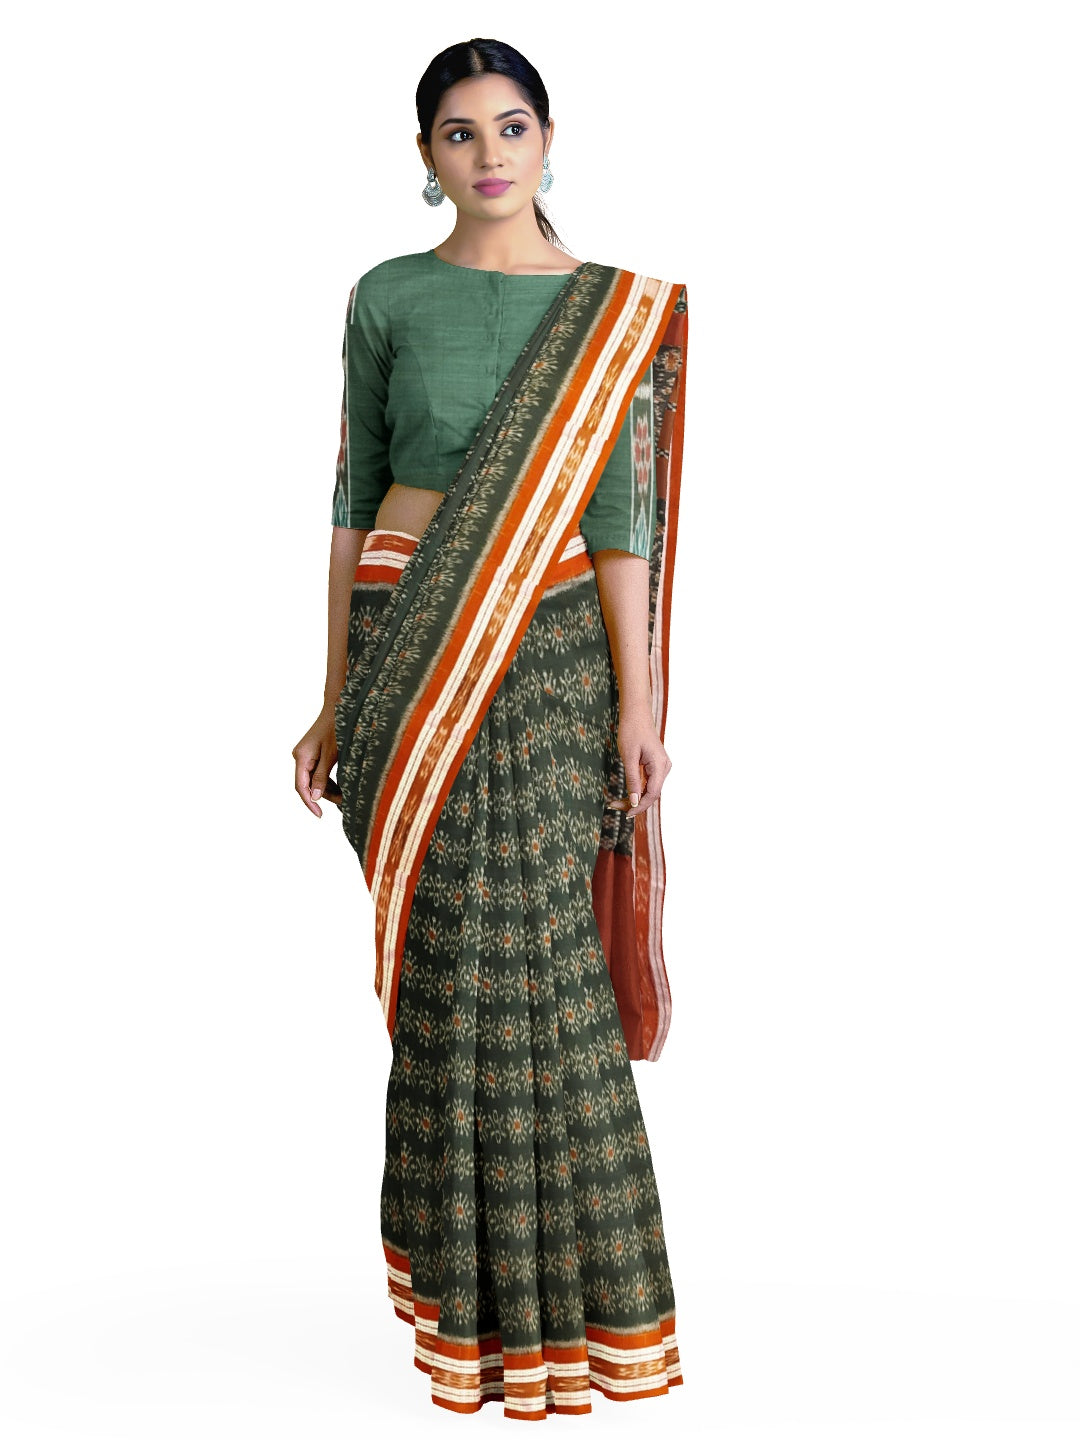 Green and Rust Odisha Ikat saree with cotton ikat blouse